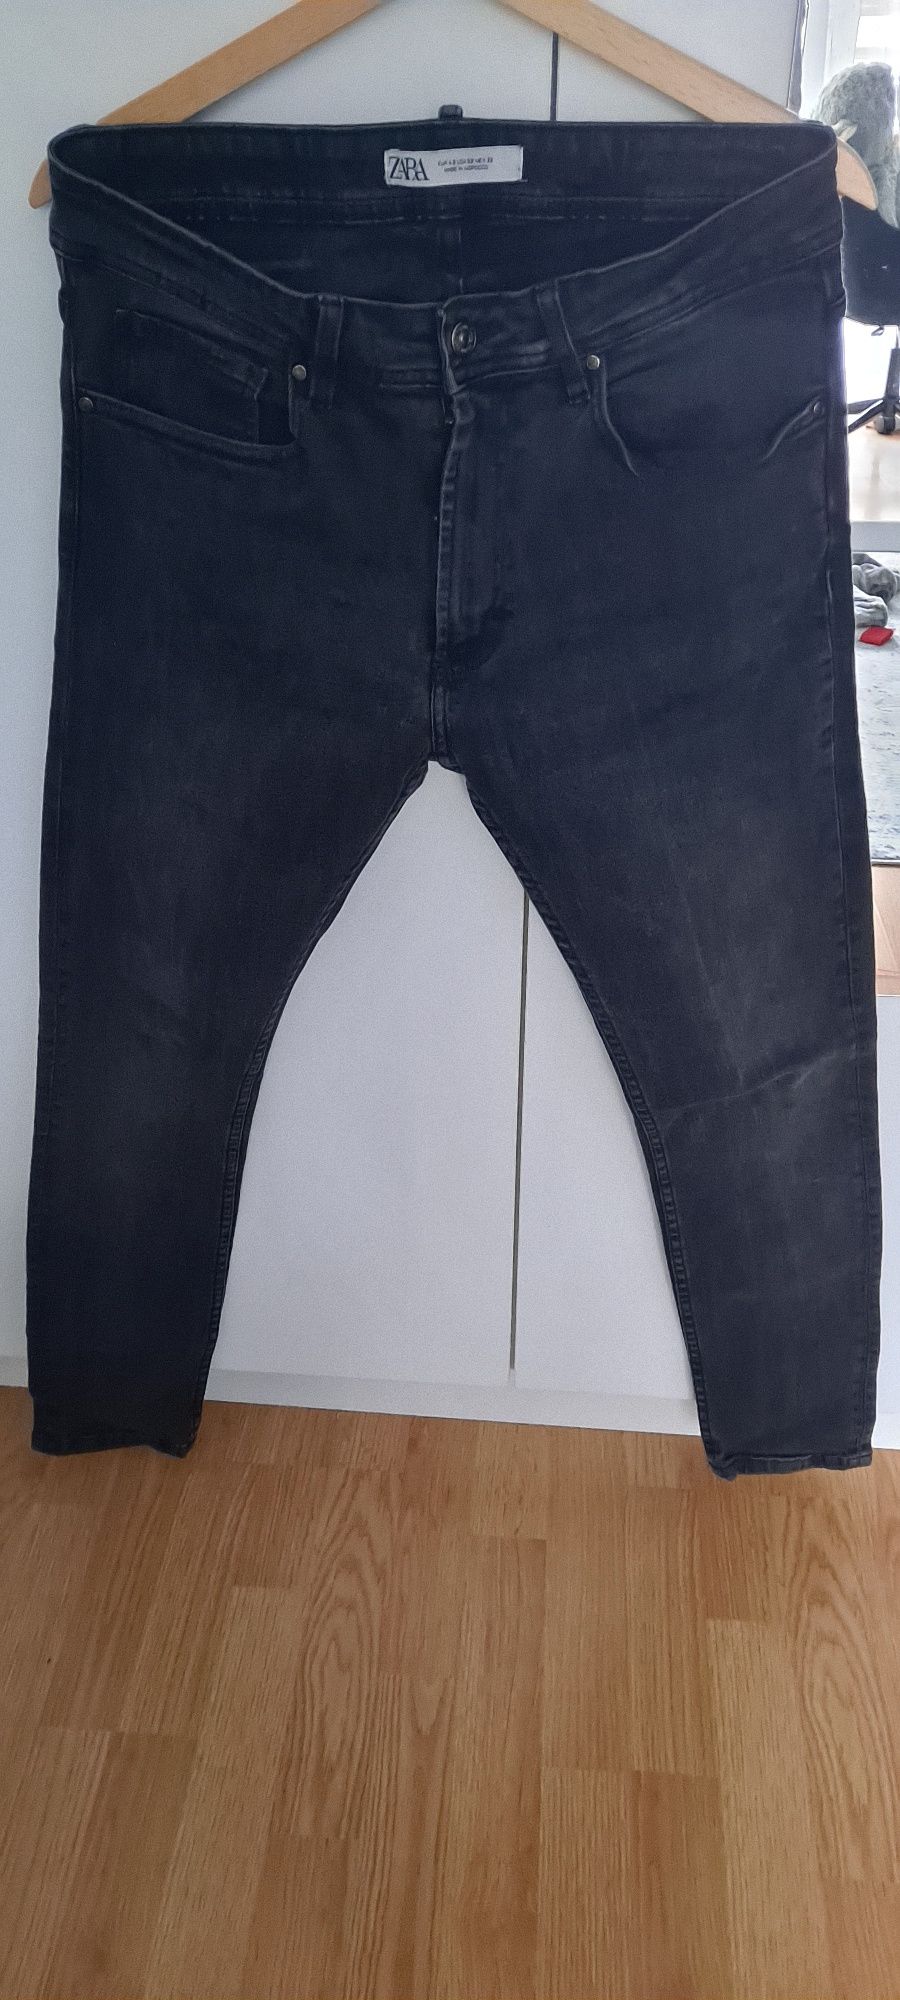 Czarne cieniowane spodnie jeansowe skinny zara